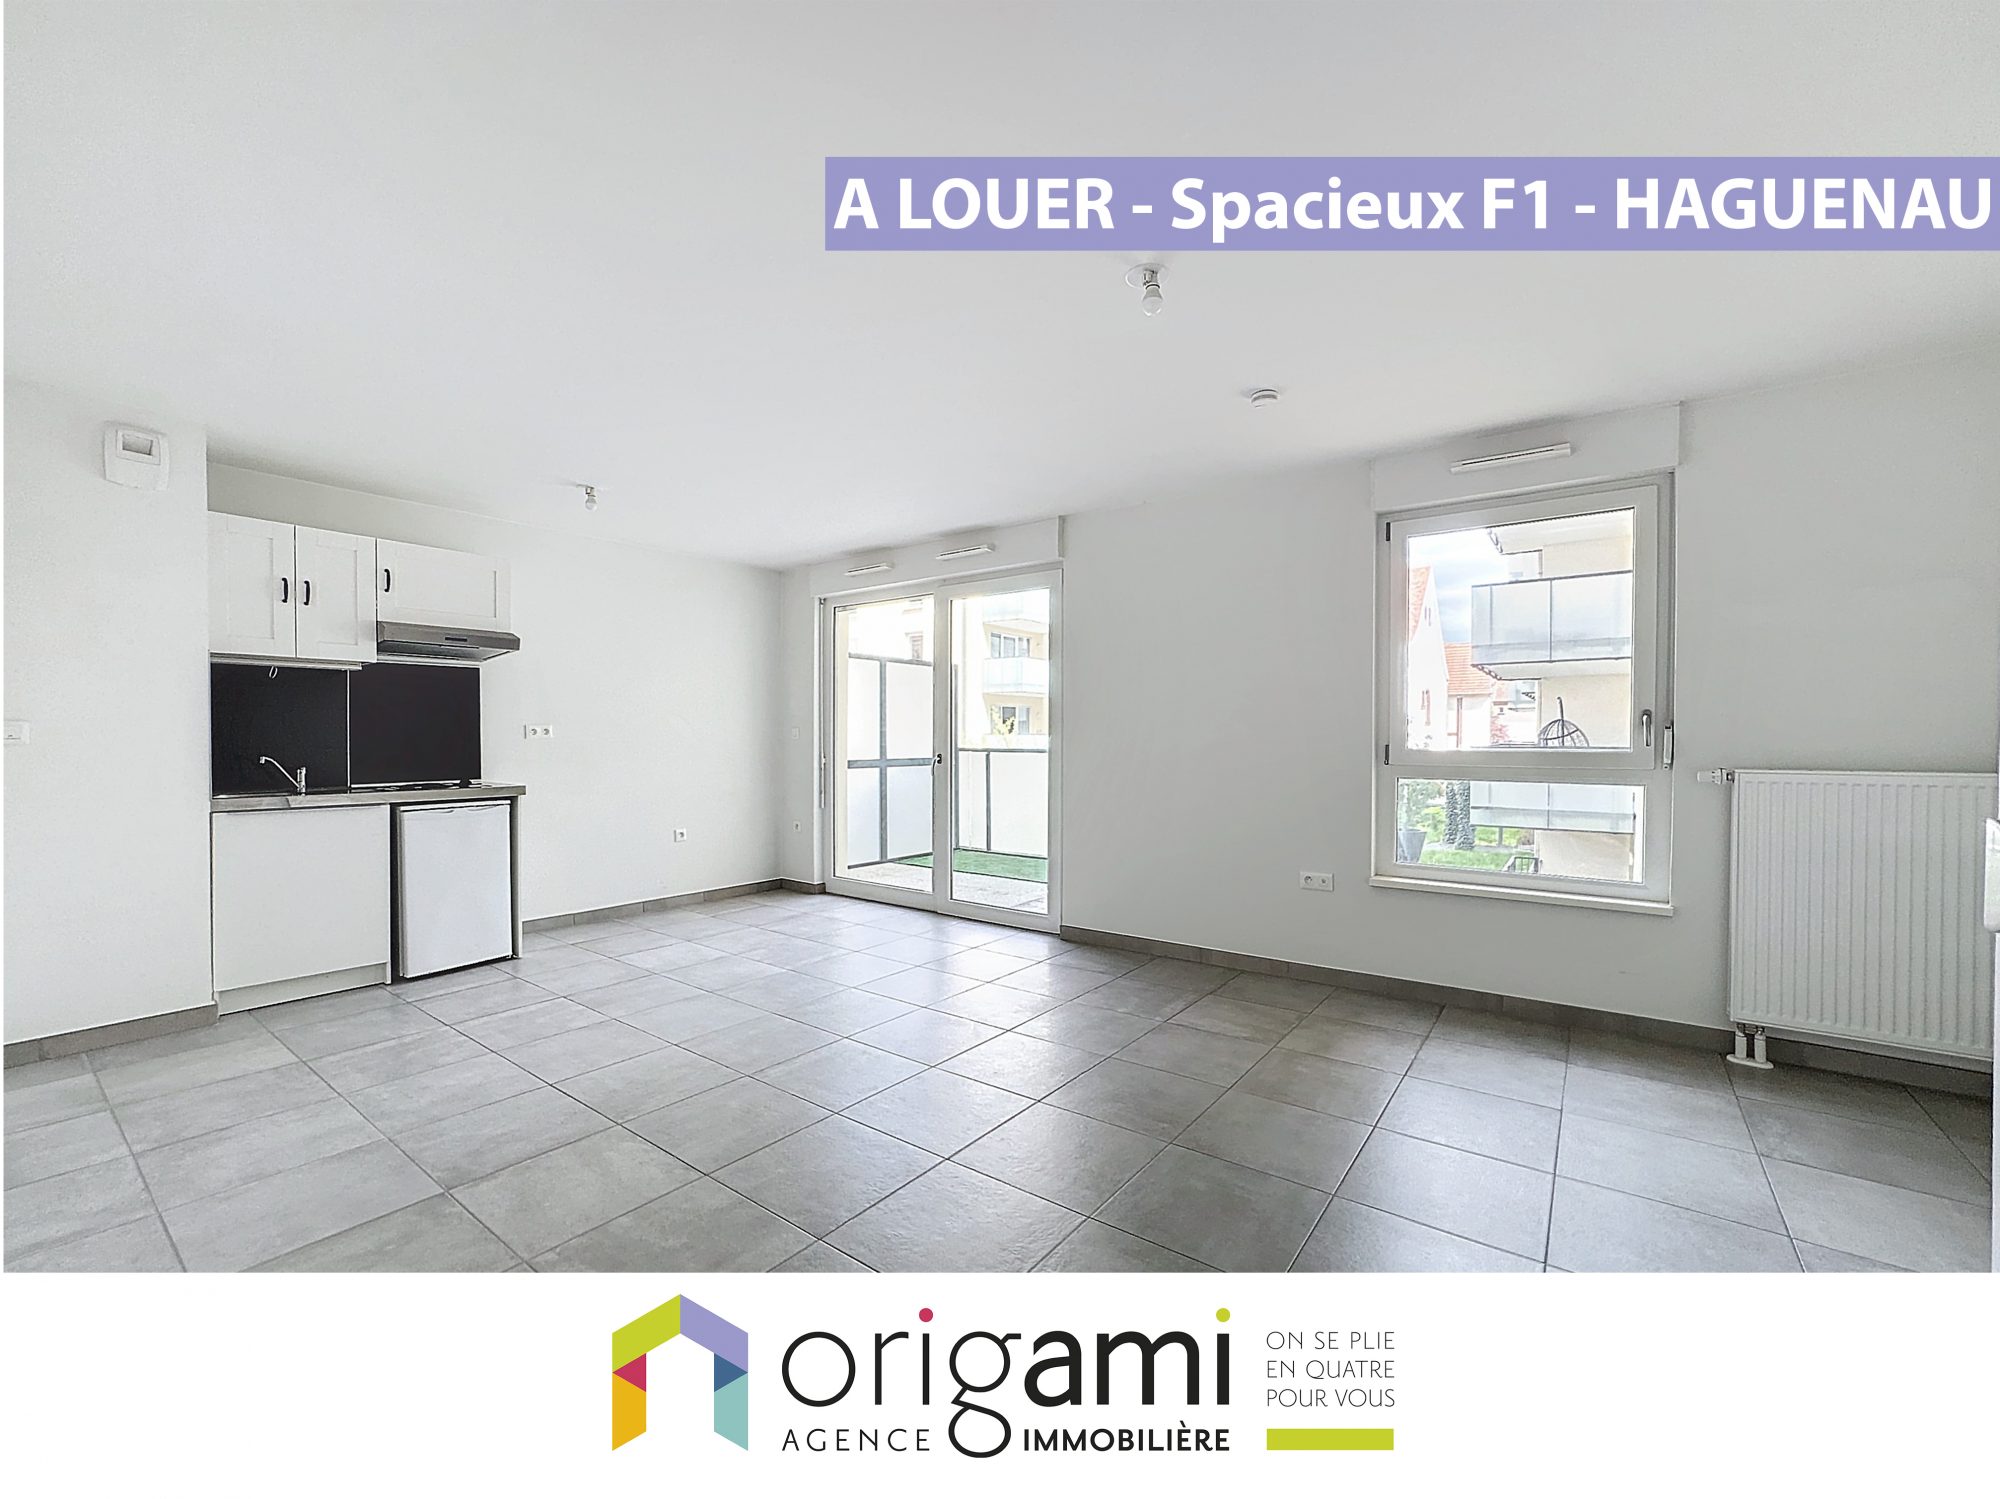 Appartement 1 pièce - 30m² - HAGUENAU